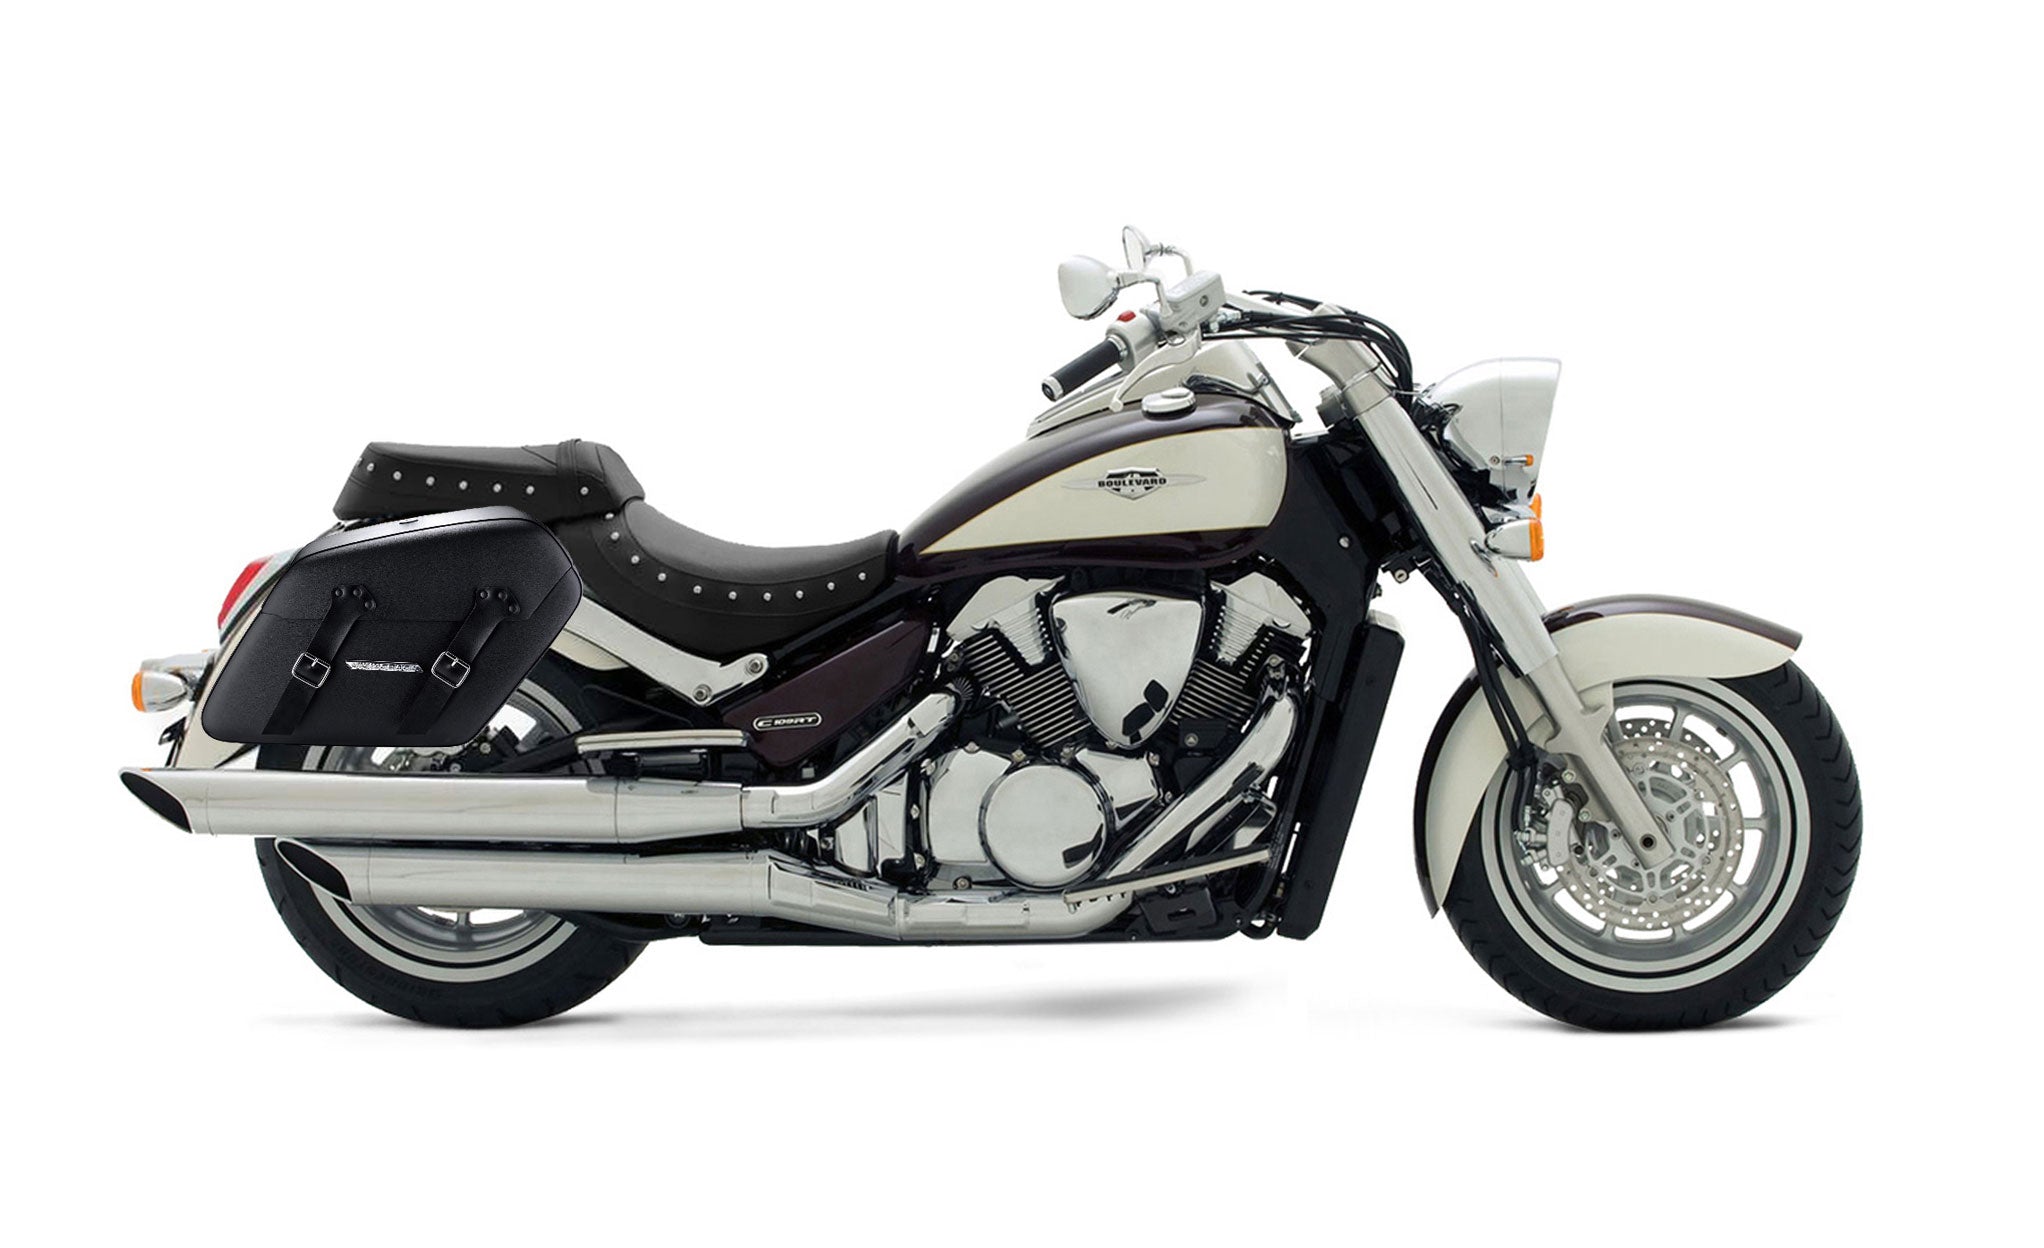 Viking Baldur Extra Large Suzuki Boulevard C109 Leather Wrapped Motorcycle Hard Saddlebags on Bike Photo @expand